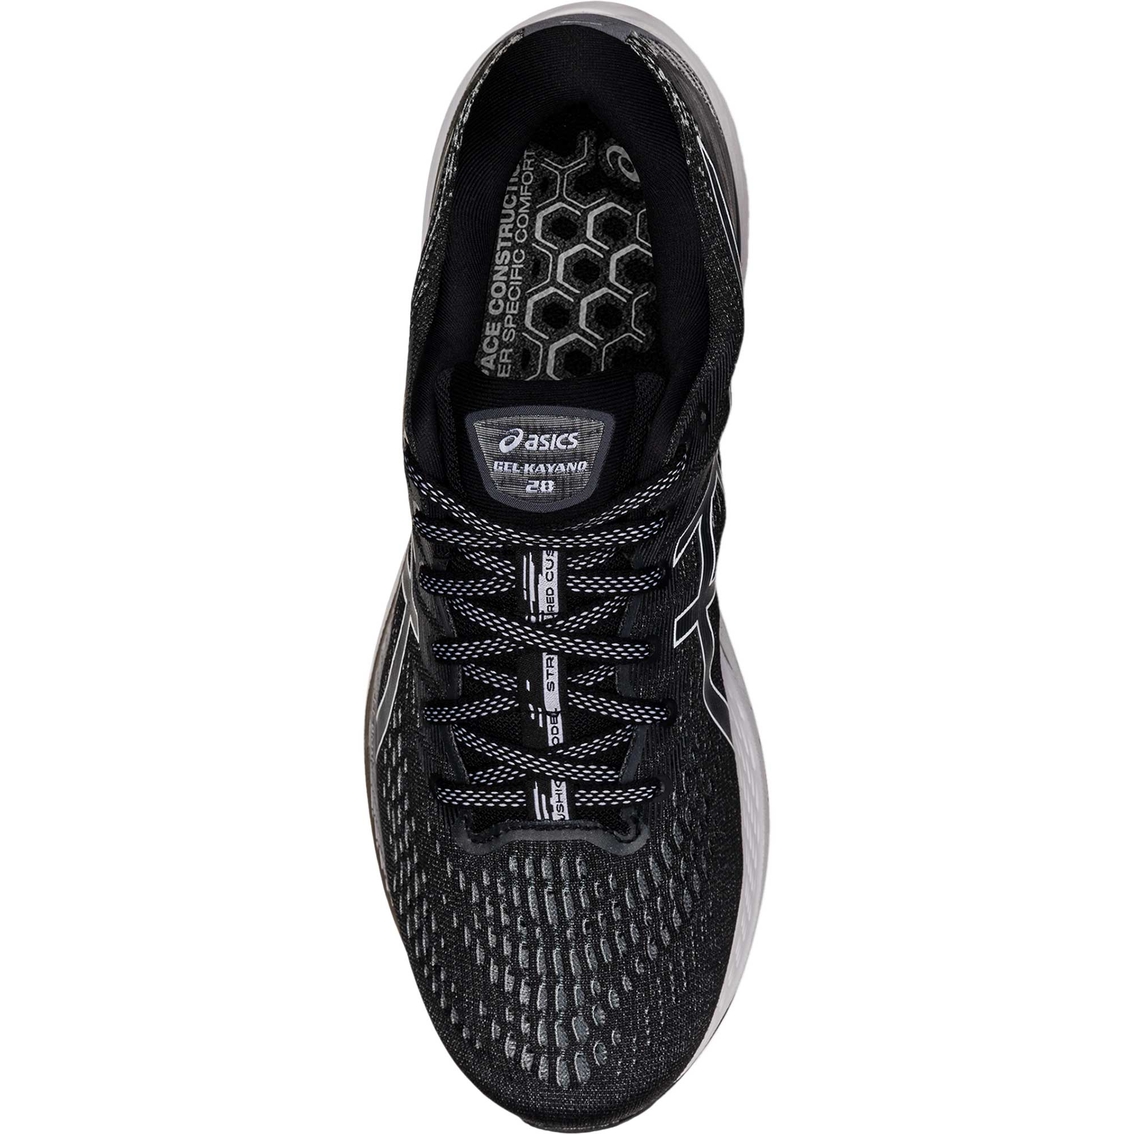 ASICS Men's Gel Kayano 28 Running Shoes - Image 4 of 7